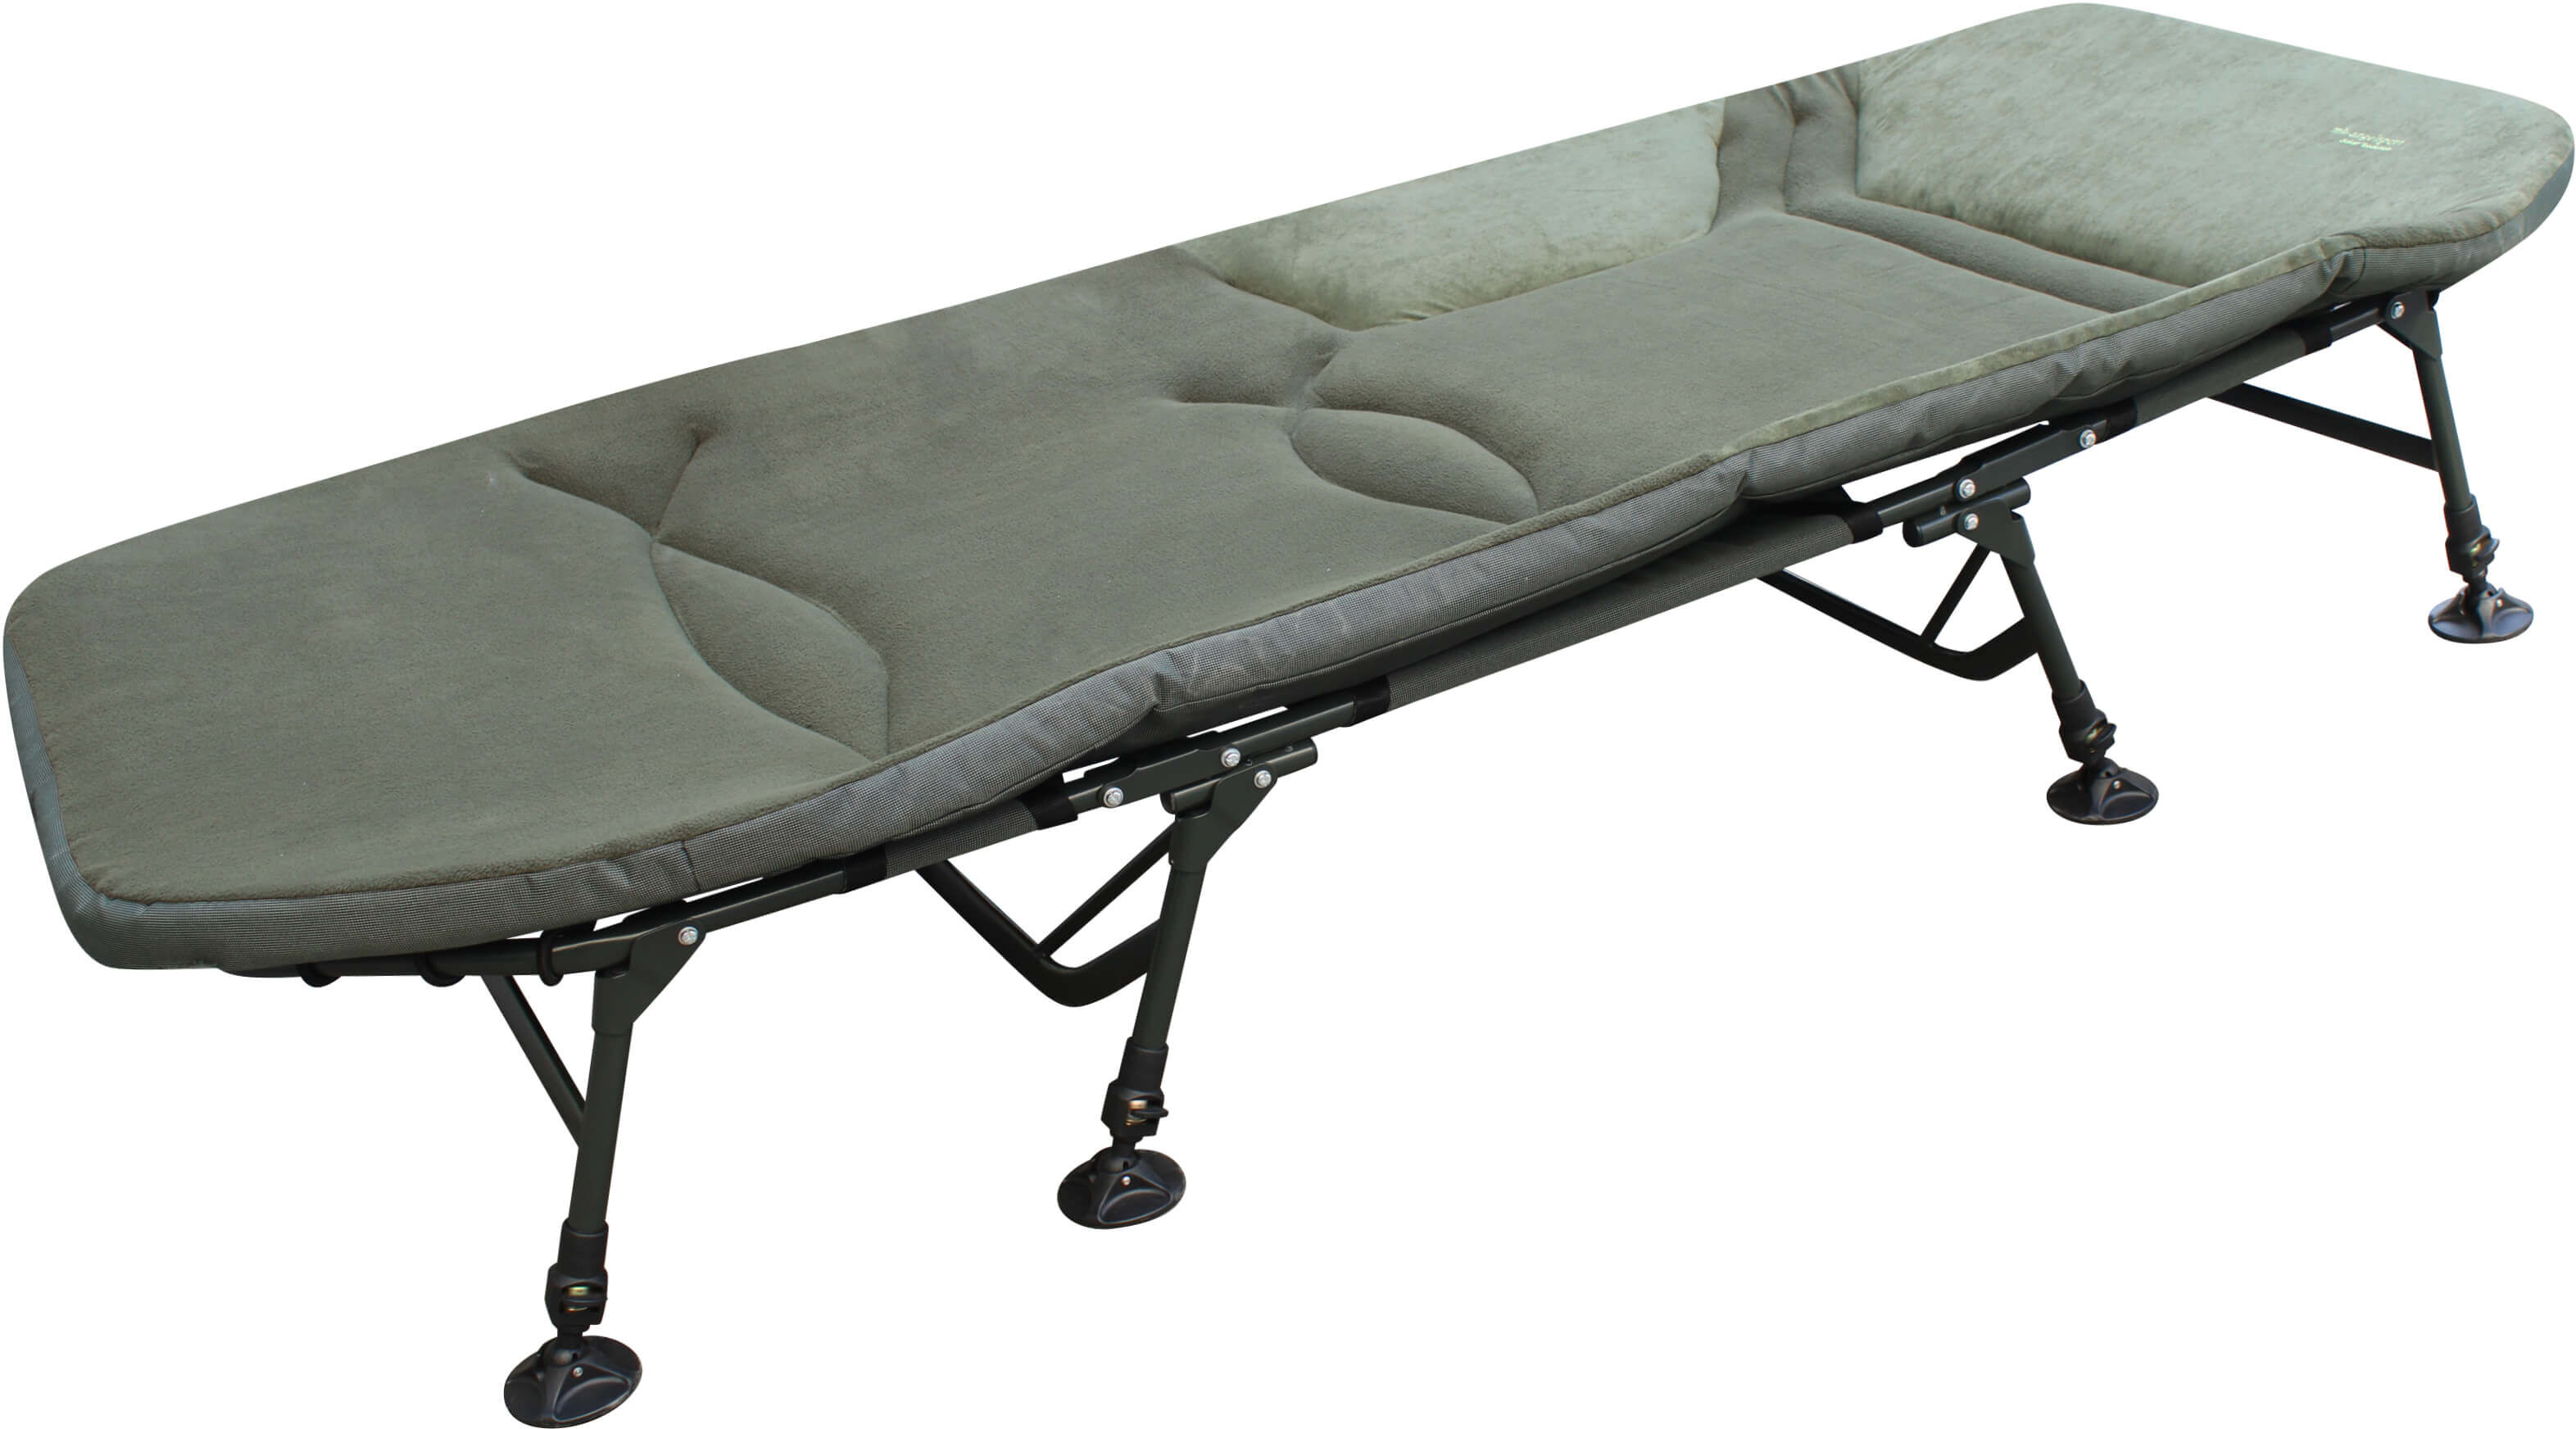 Die Giant liege besitzt eine ähnlich abnehmbare Matratze wie das Chub Vantage Bedchair. Die Matratzenliege kann wie beim der Fox Flatliner Camo Liege entfernt werden.